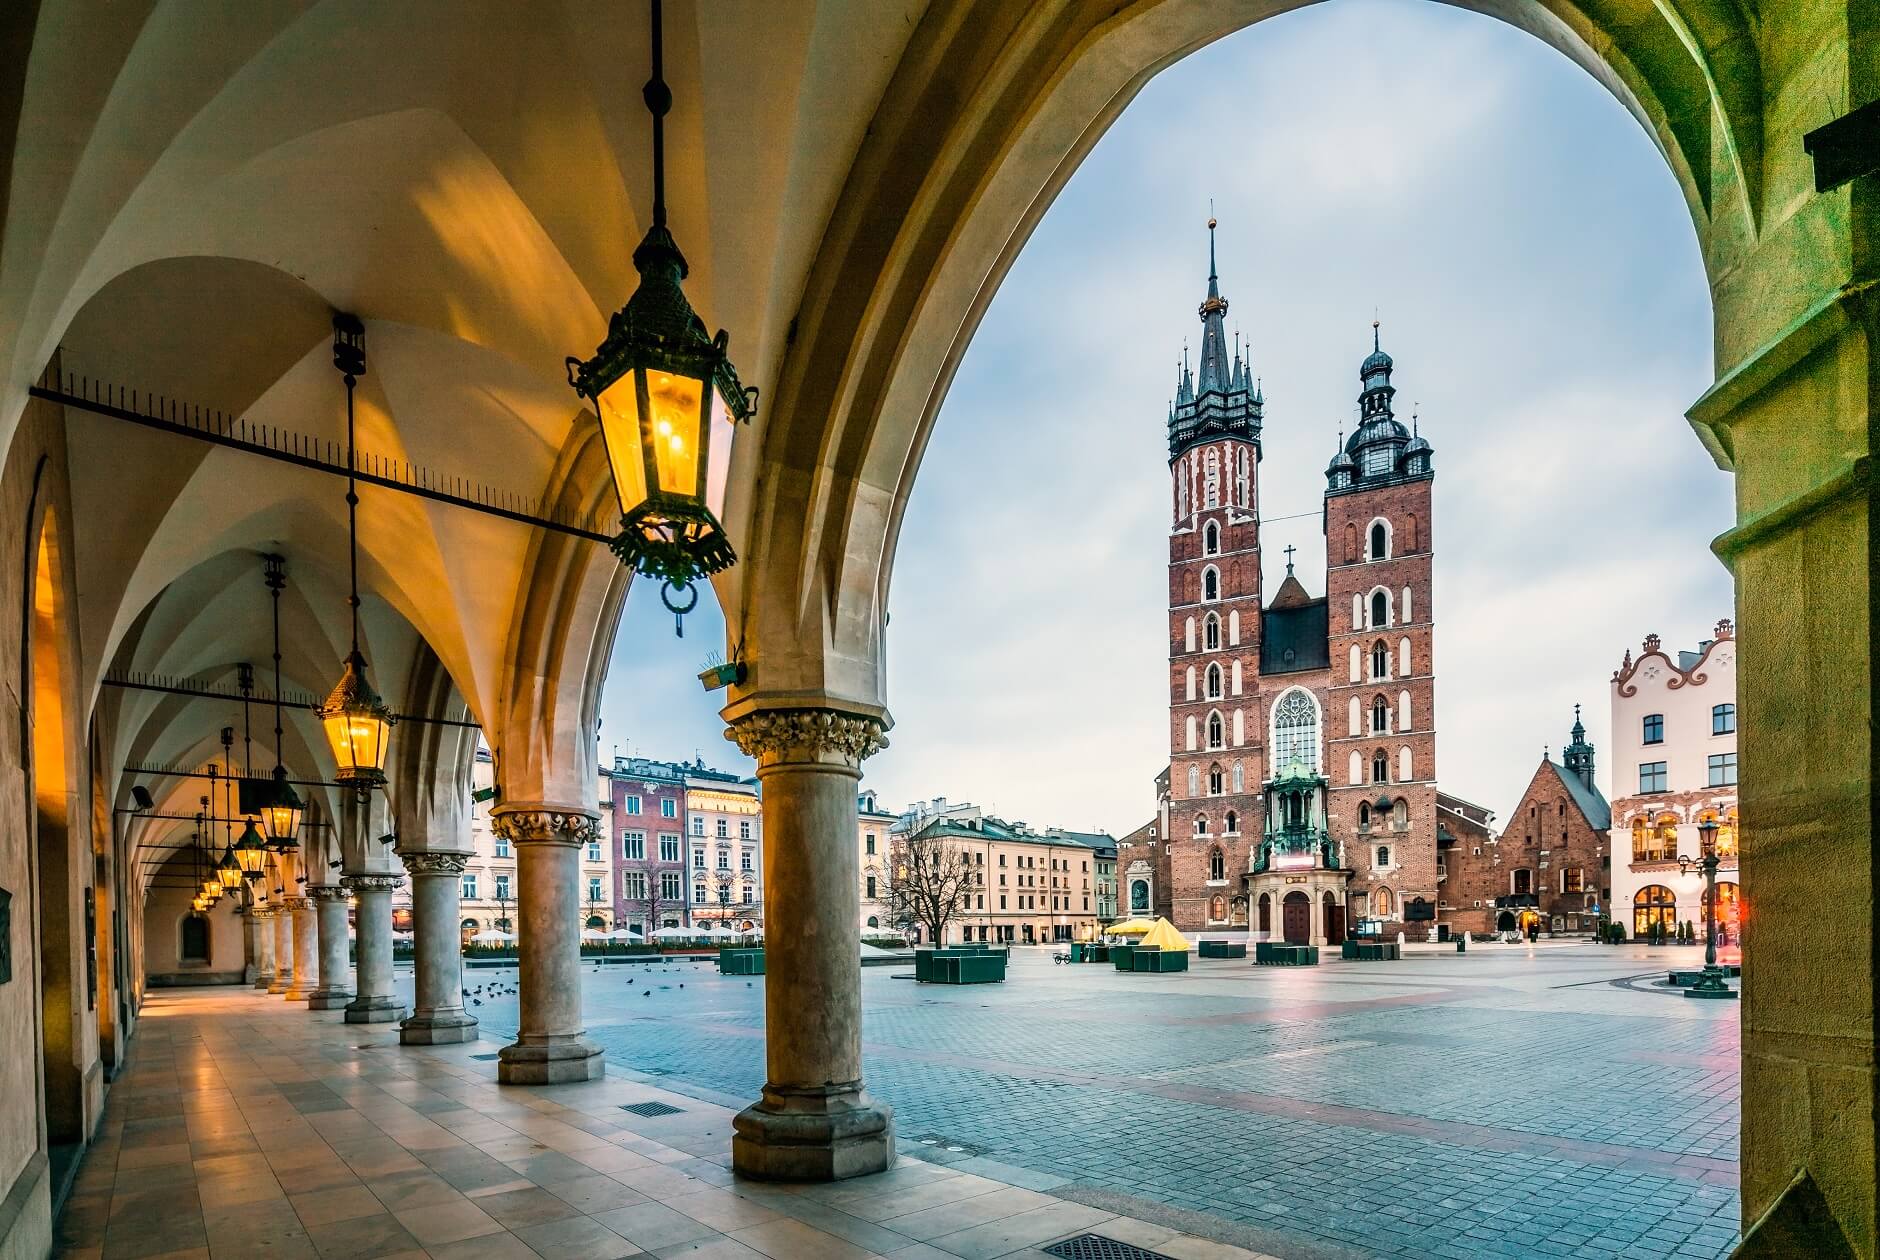 Pomysł na wyjazd na weekend - może Kraków?